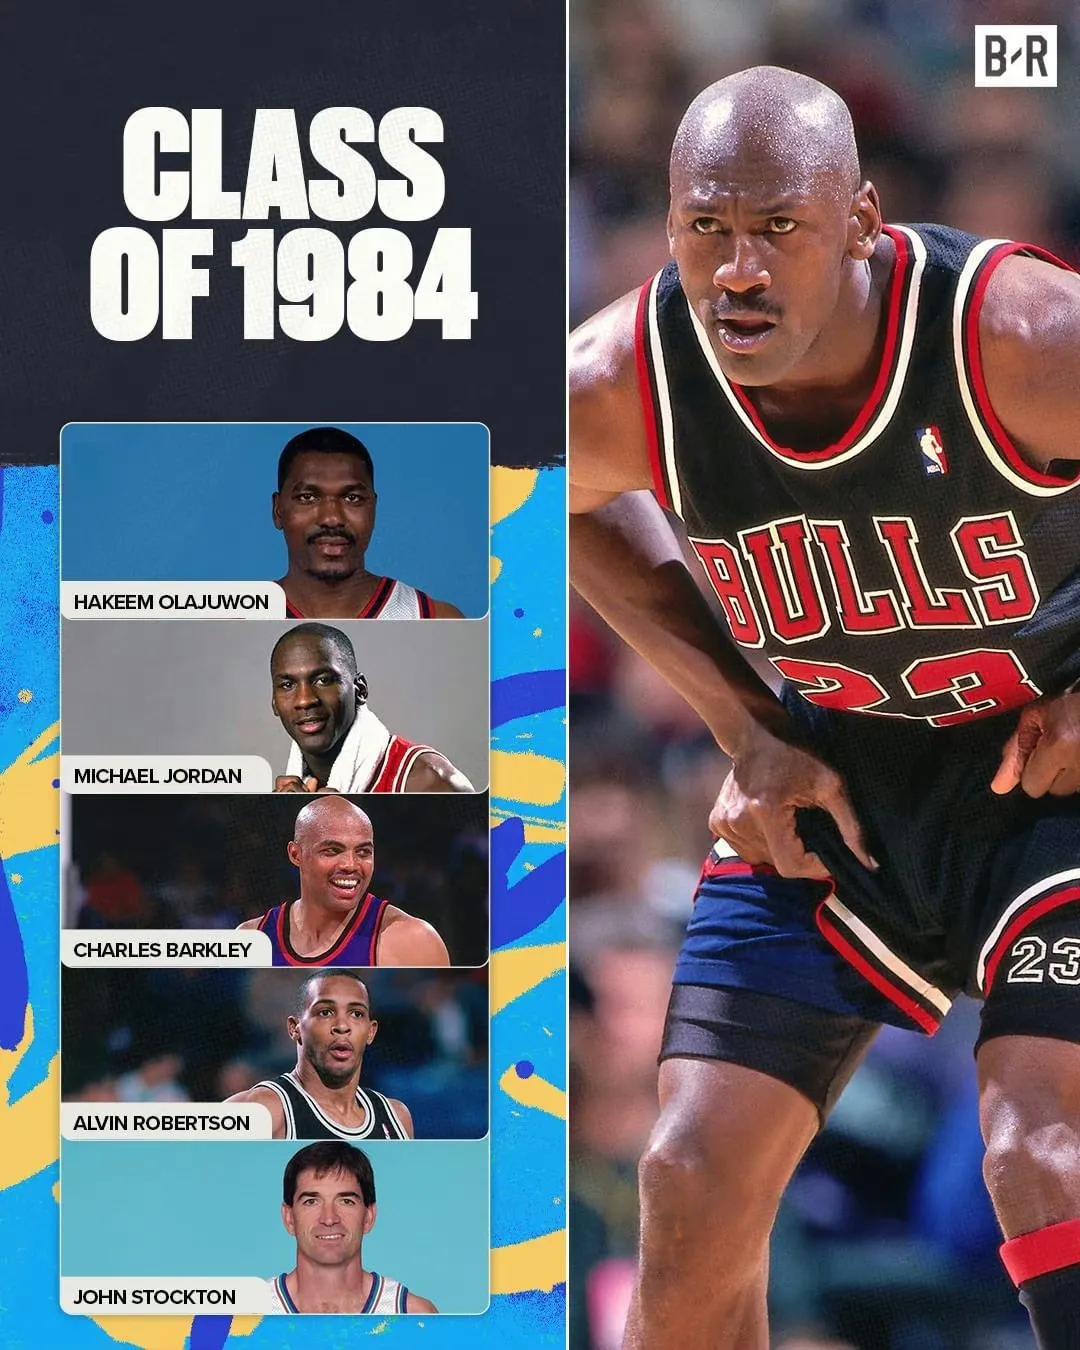 美媒发问：哪一届是最好的选秀年？

1984年选秀：
乔丹：6冠、5MVP、6F(1)